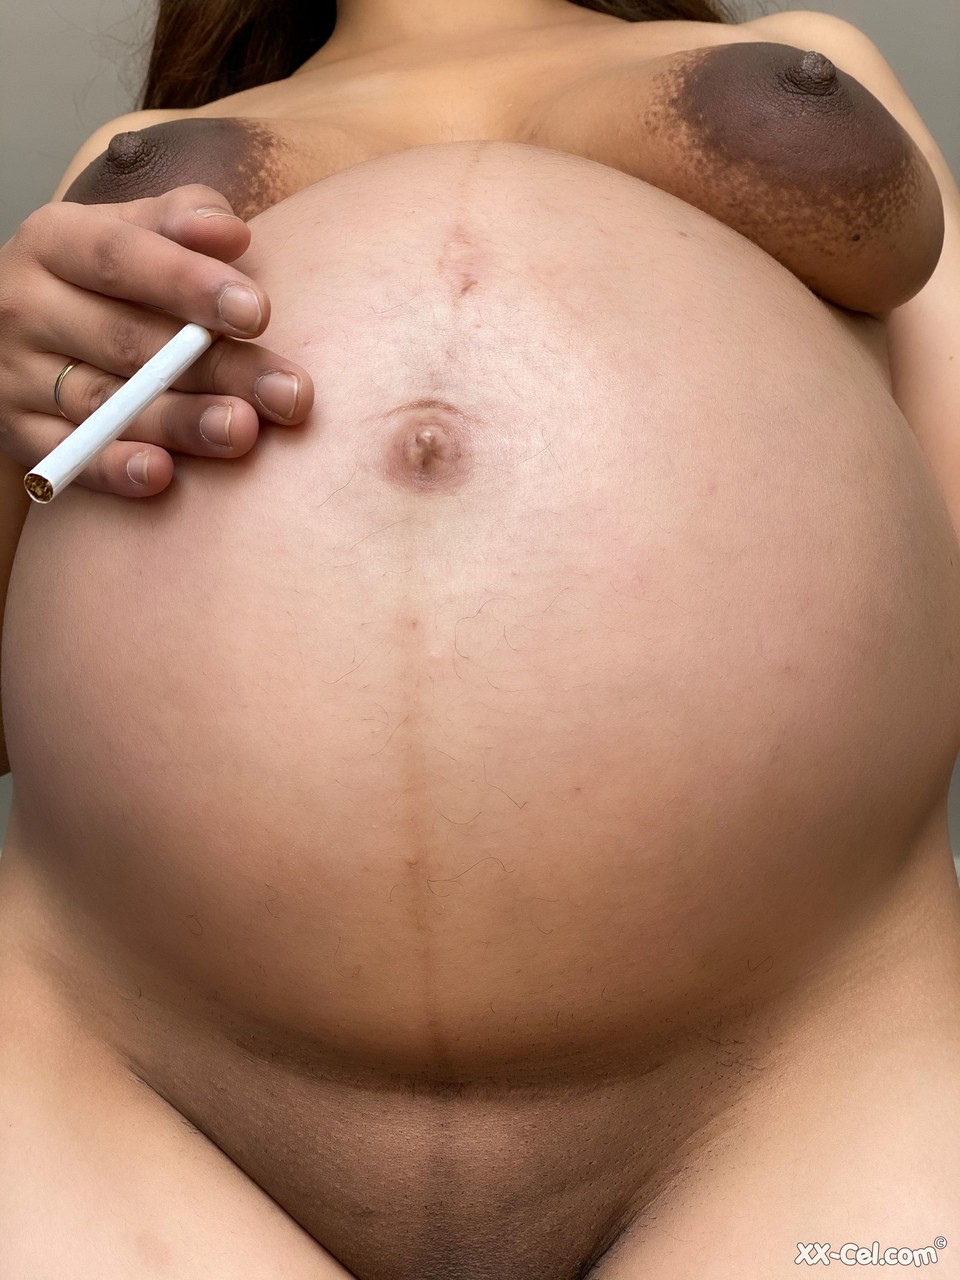 Pregnant smoker Leila teasing nude with her bulging tummy & her dark nipples photo porno #424132694 | XX Cel Pics, Leila, Pregnant, porno mobile